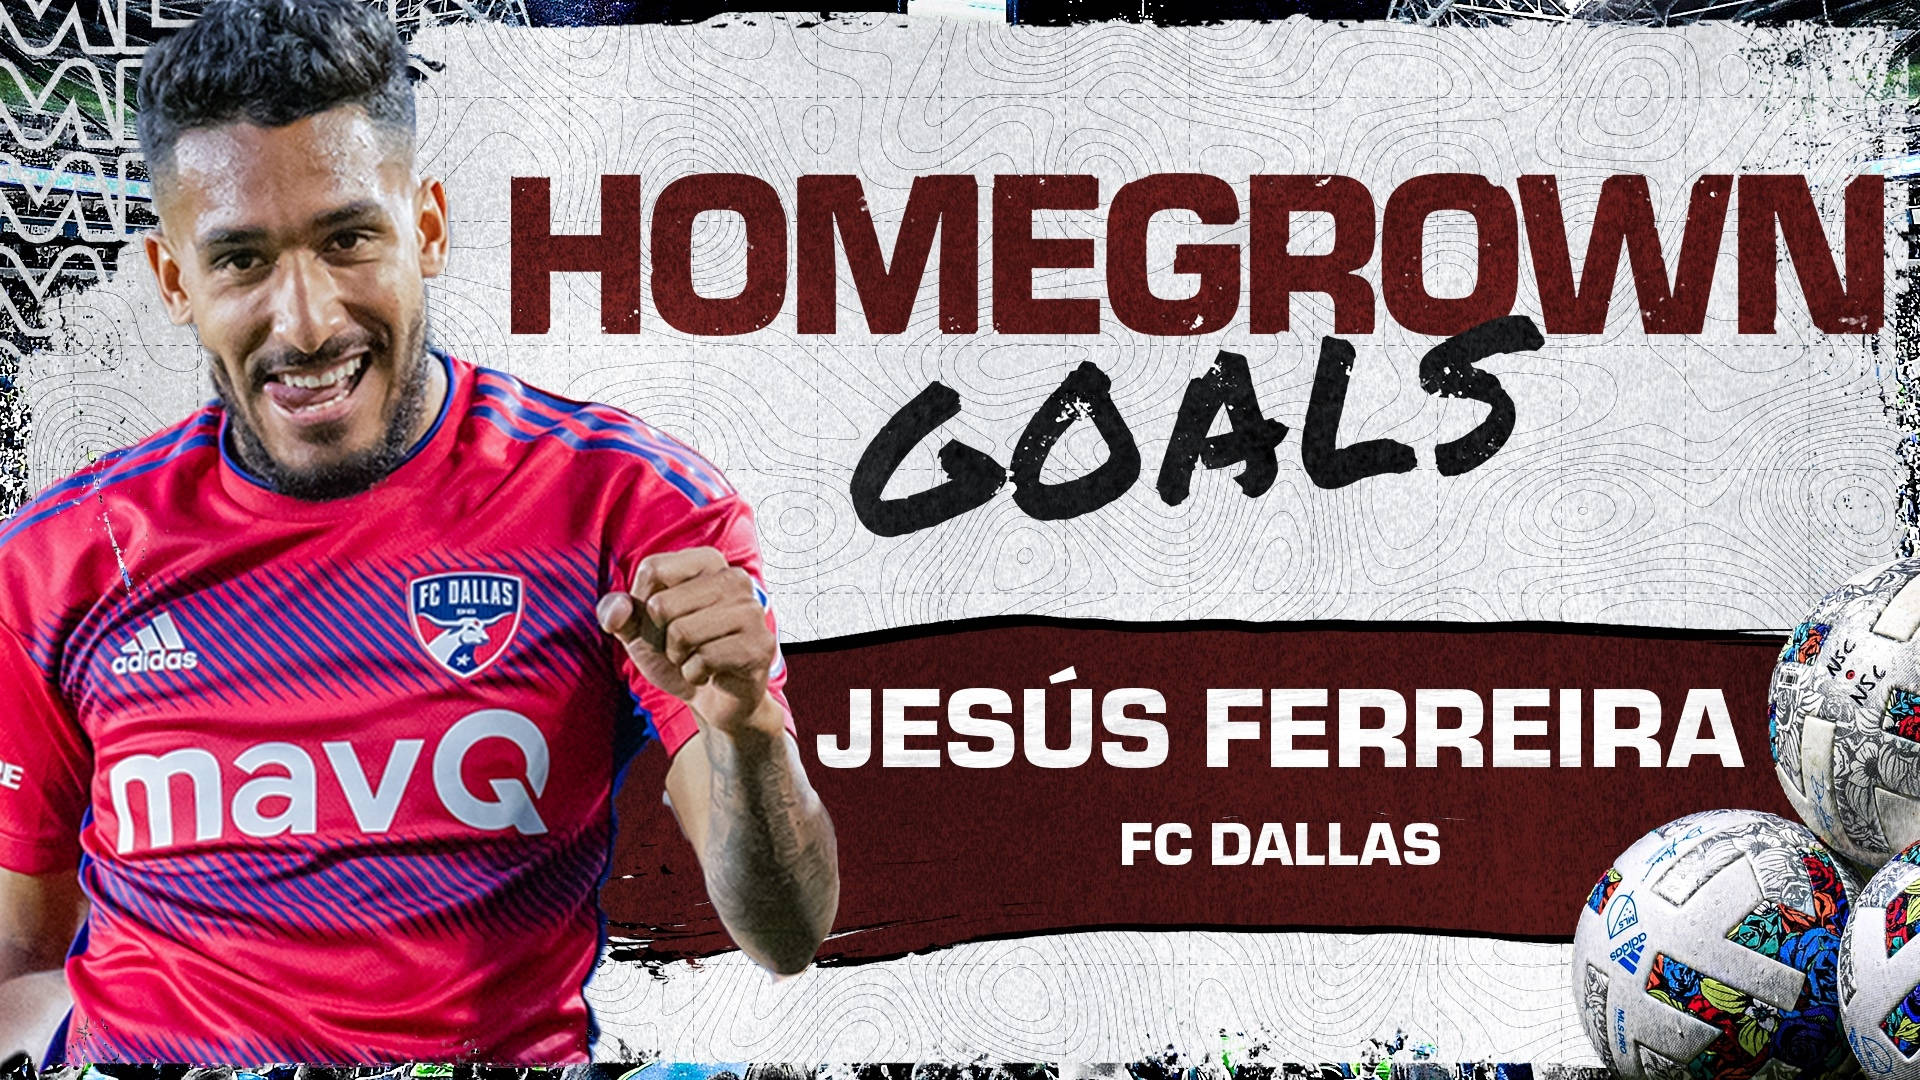 Jesus Ferreira FC Dallas Fodboldspiller Mål Scoret Wallpaper Wallpaper